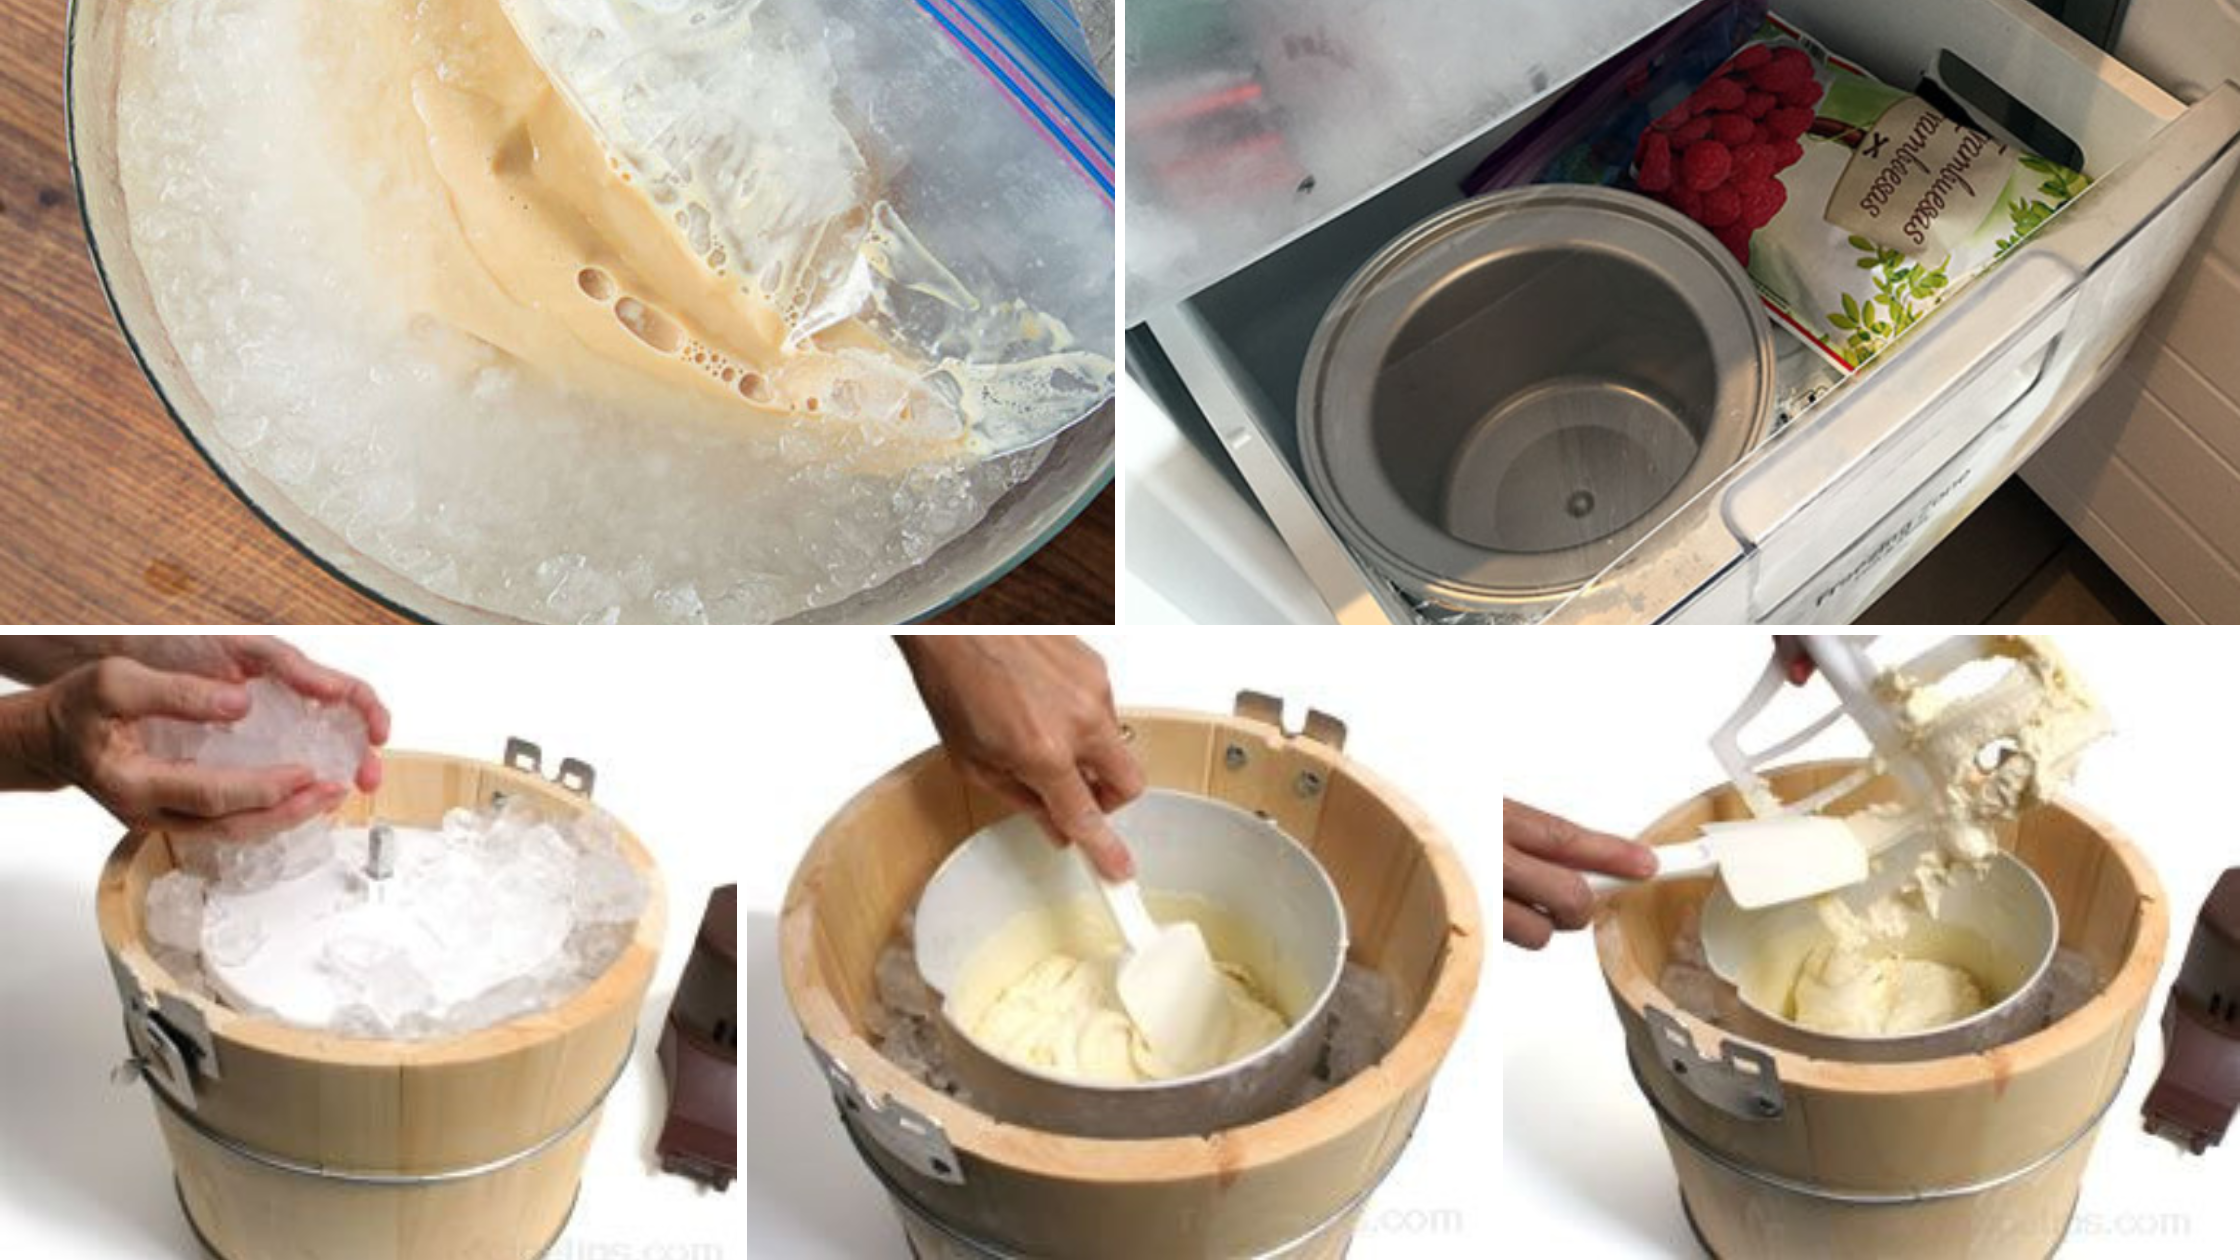 Drawbacks of Non-Compressor Ice Cream Makers